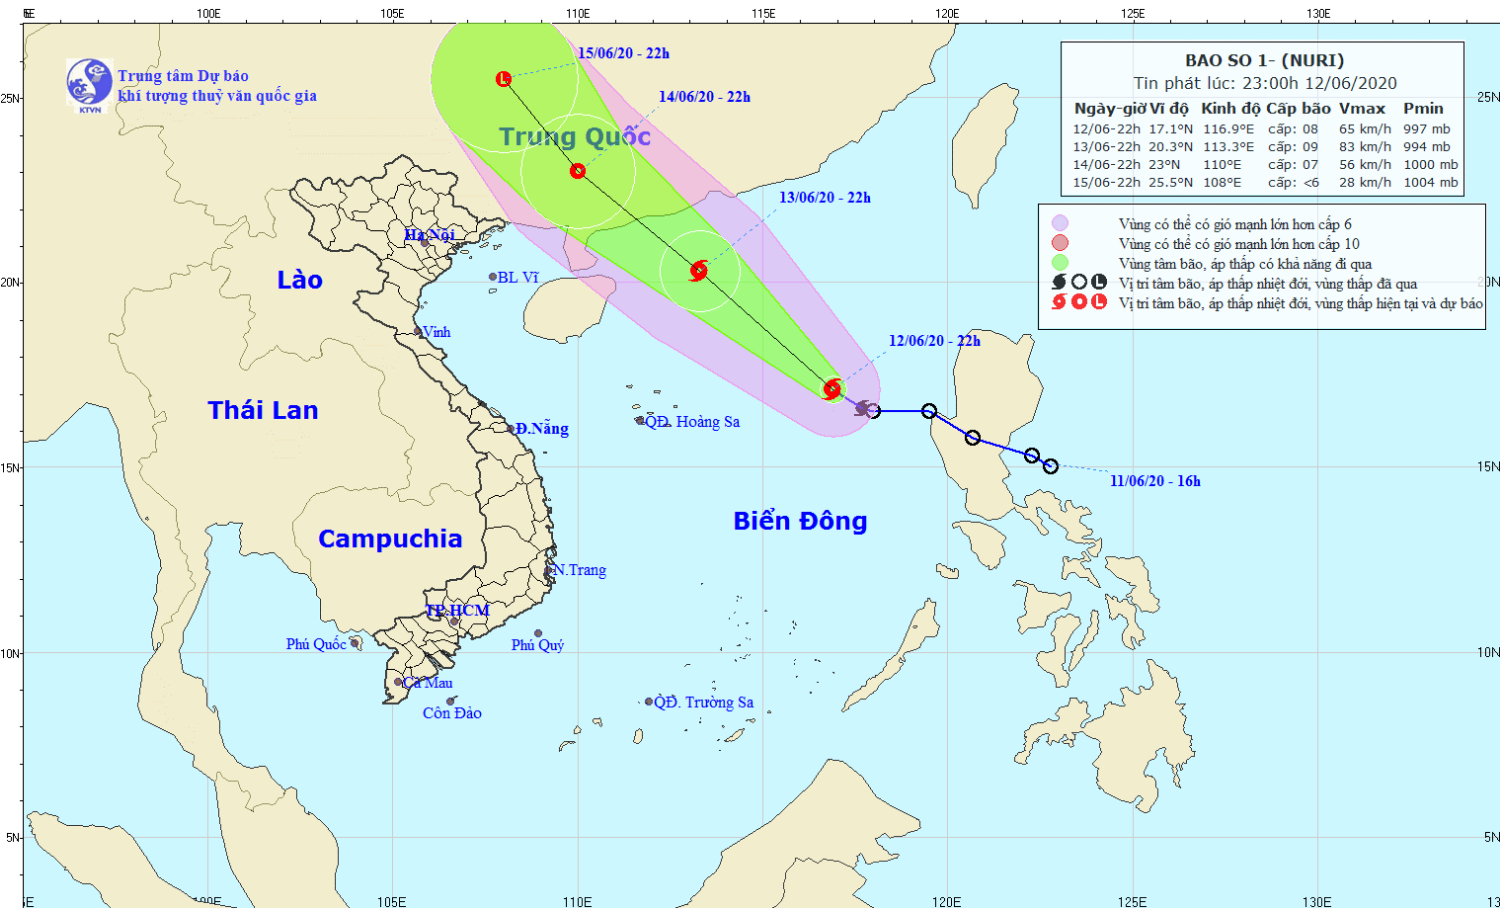 Tin bão trên Biển Đông - cơn bão số 01 (23h00 ngày 12/6)